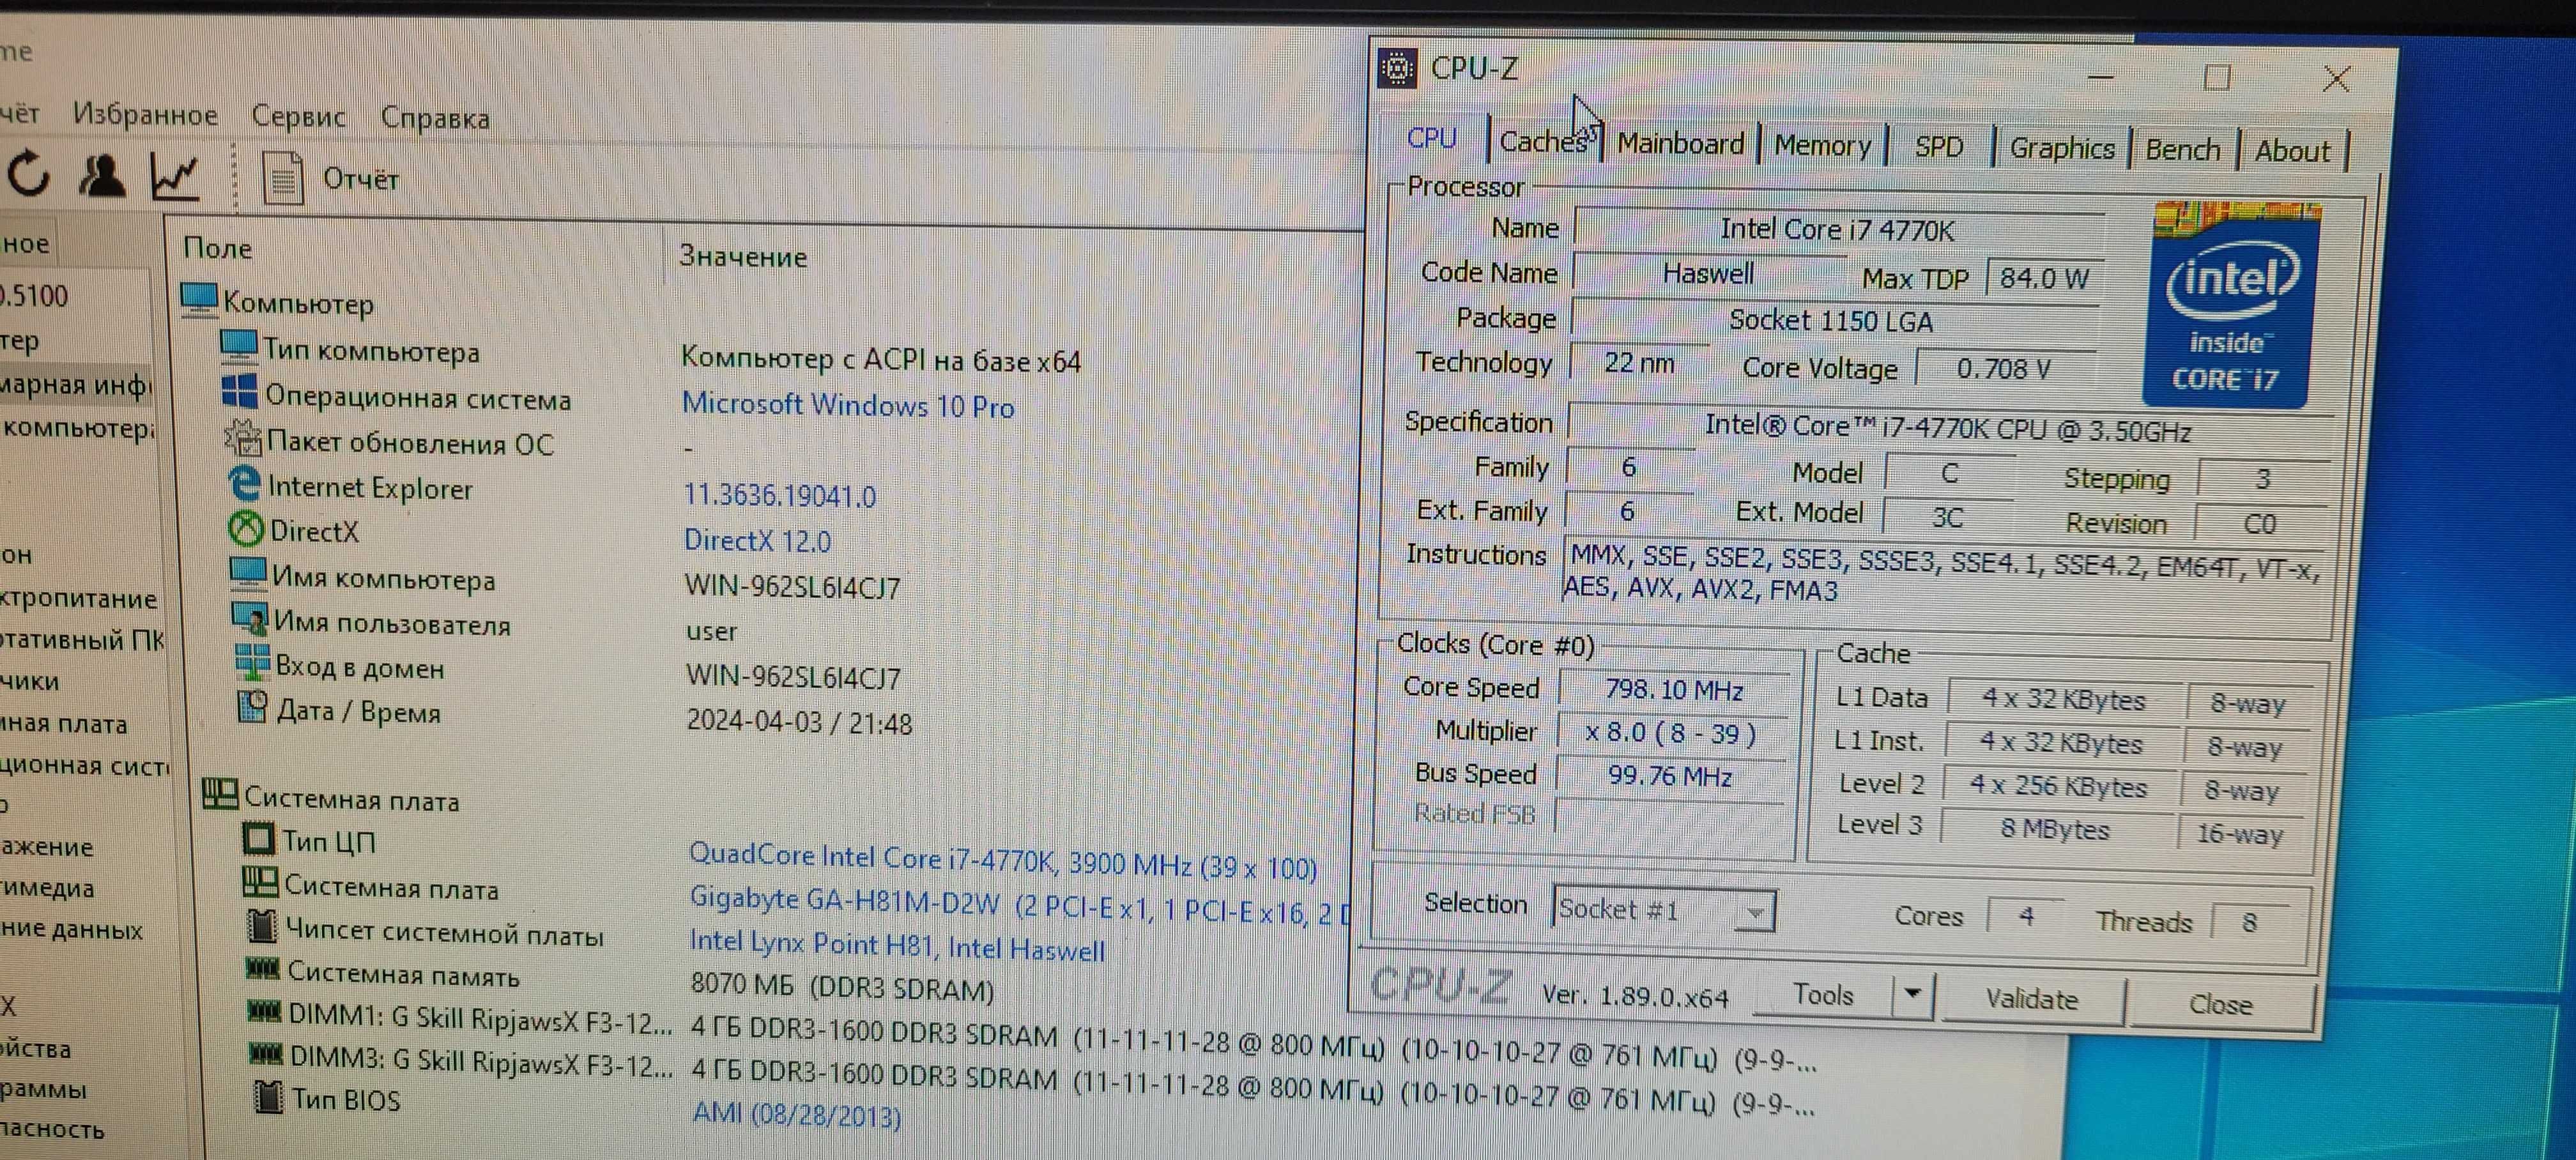 TOP процессор S1150 I7 4770K 3.6GHz + разгон I7 4790 3.8GHz